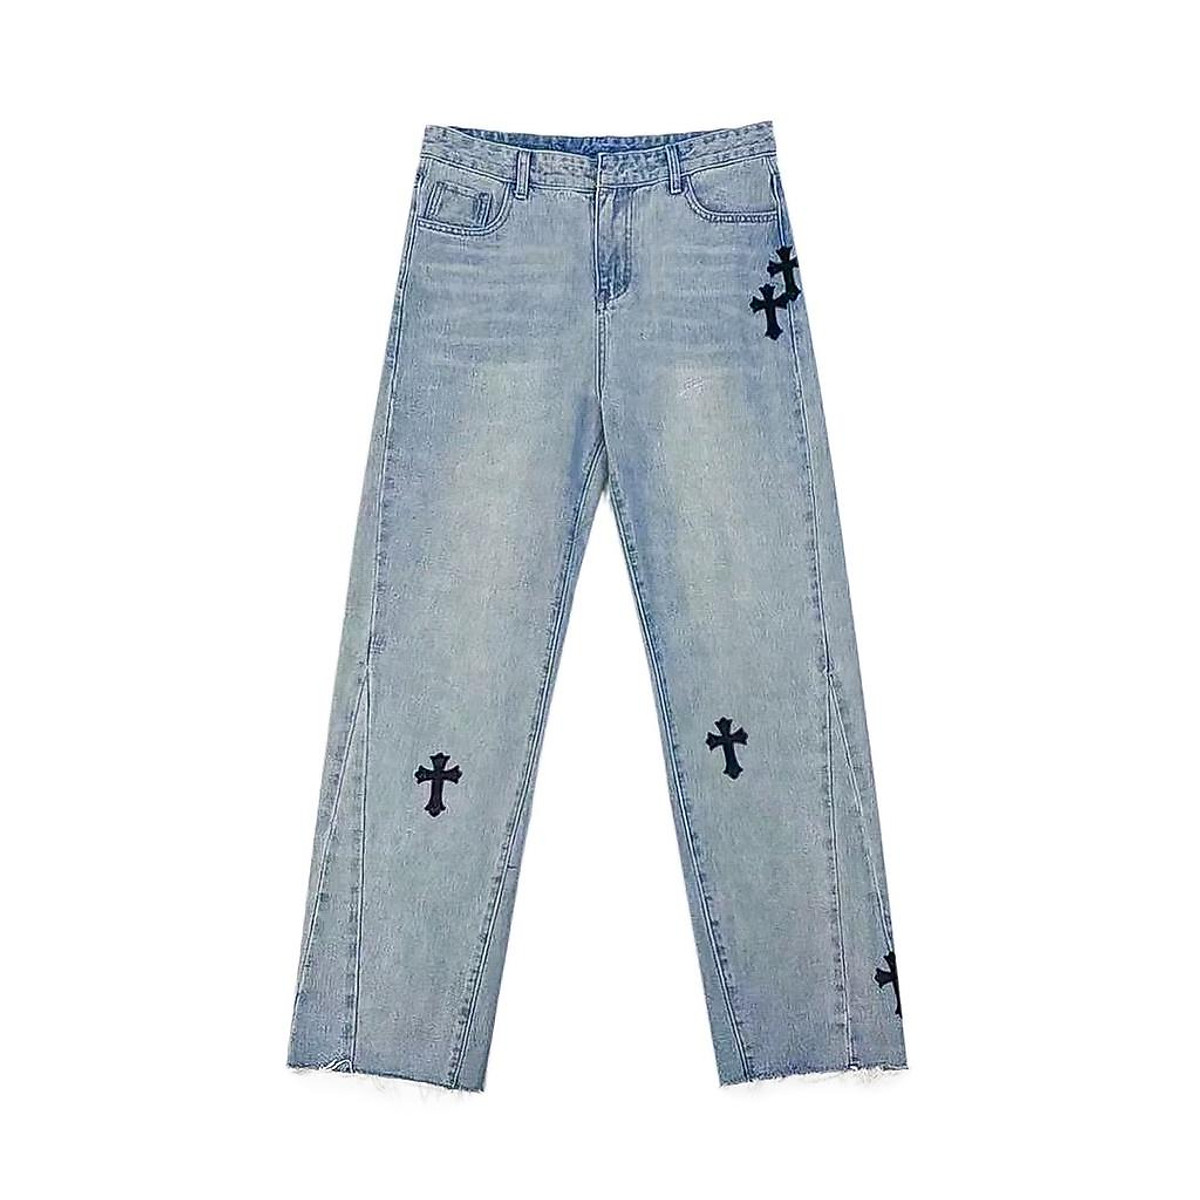 Jeans ống côn và top 5 các phối đồ đẹp nhất cho nam giới